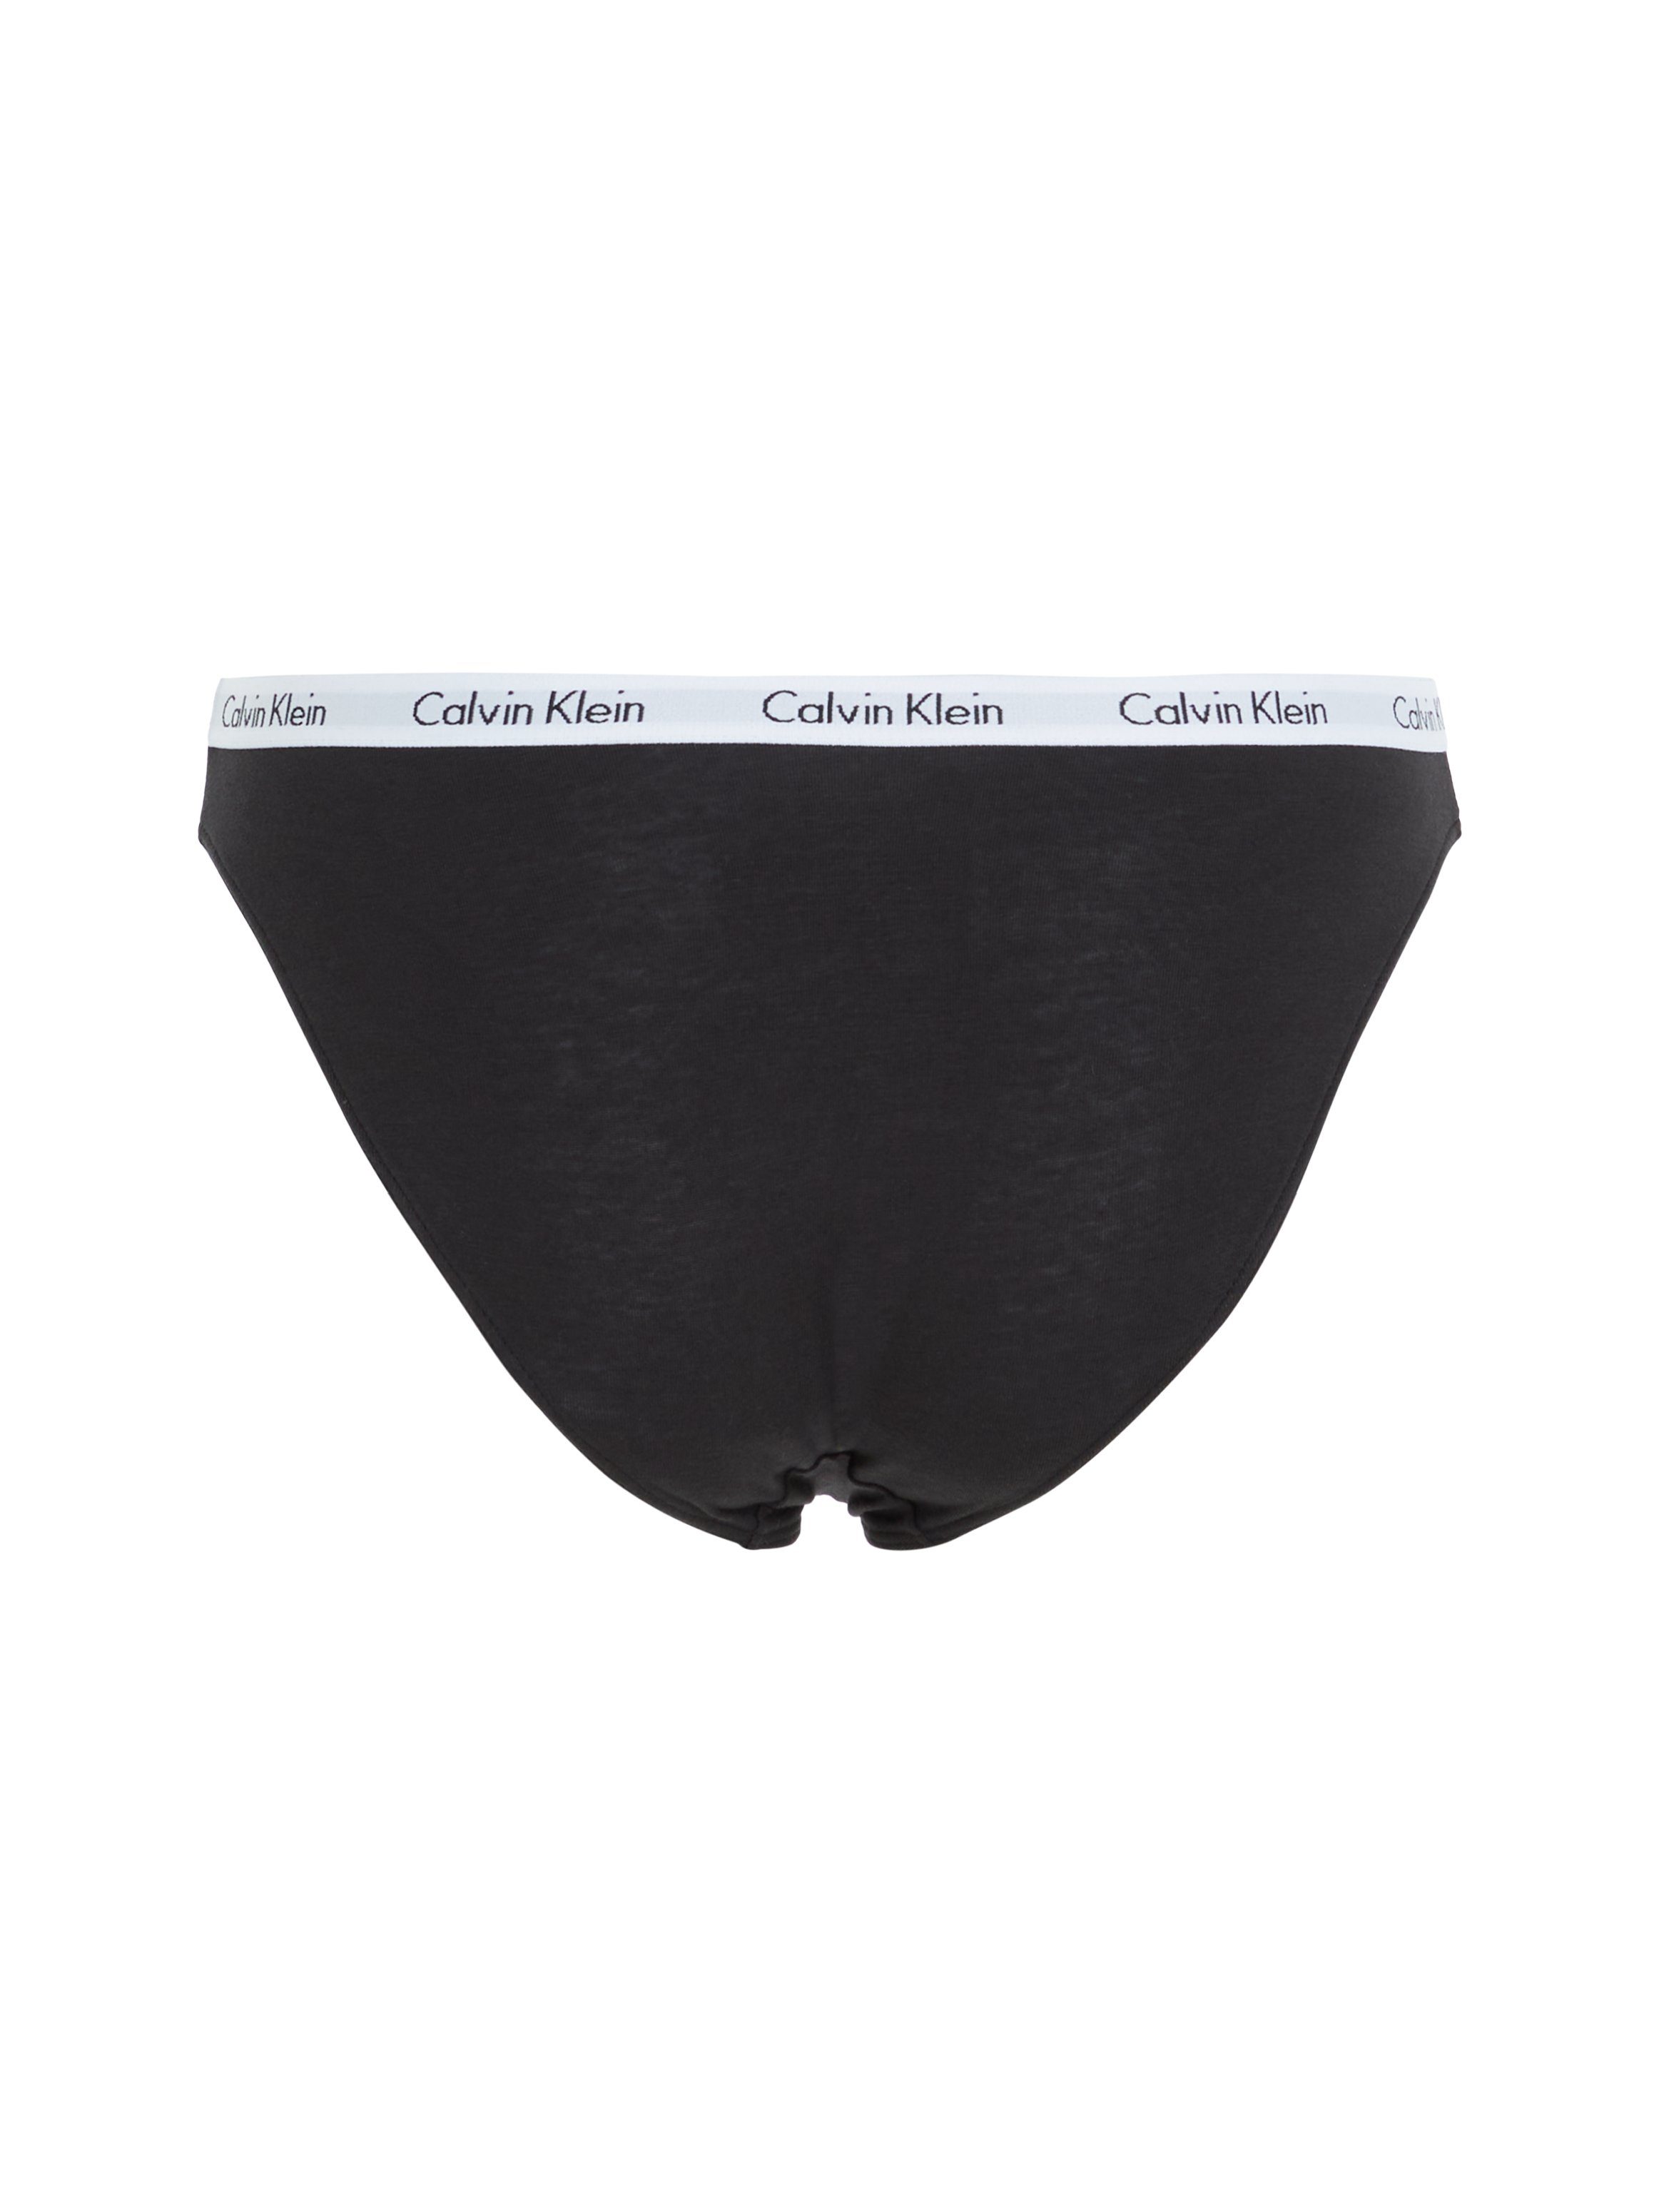 Klein Bikinislip Logobund schwarz mit Calvin klassischem Underwear